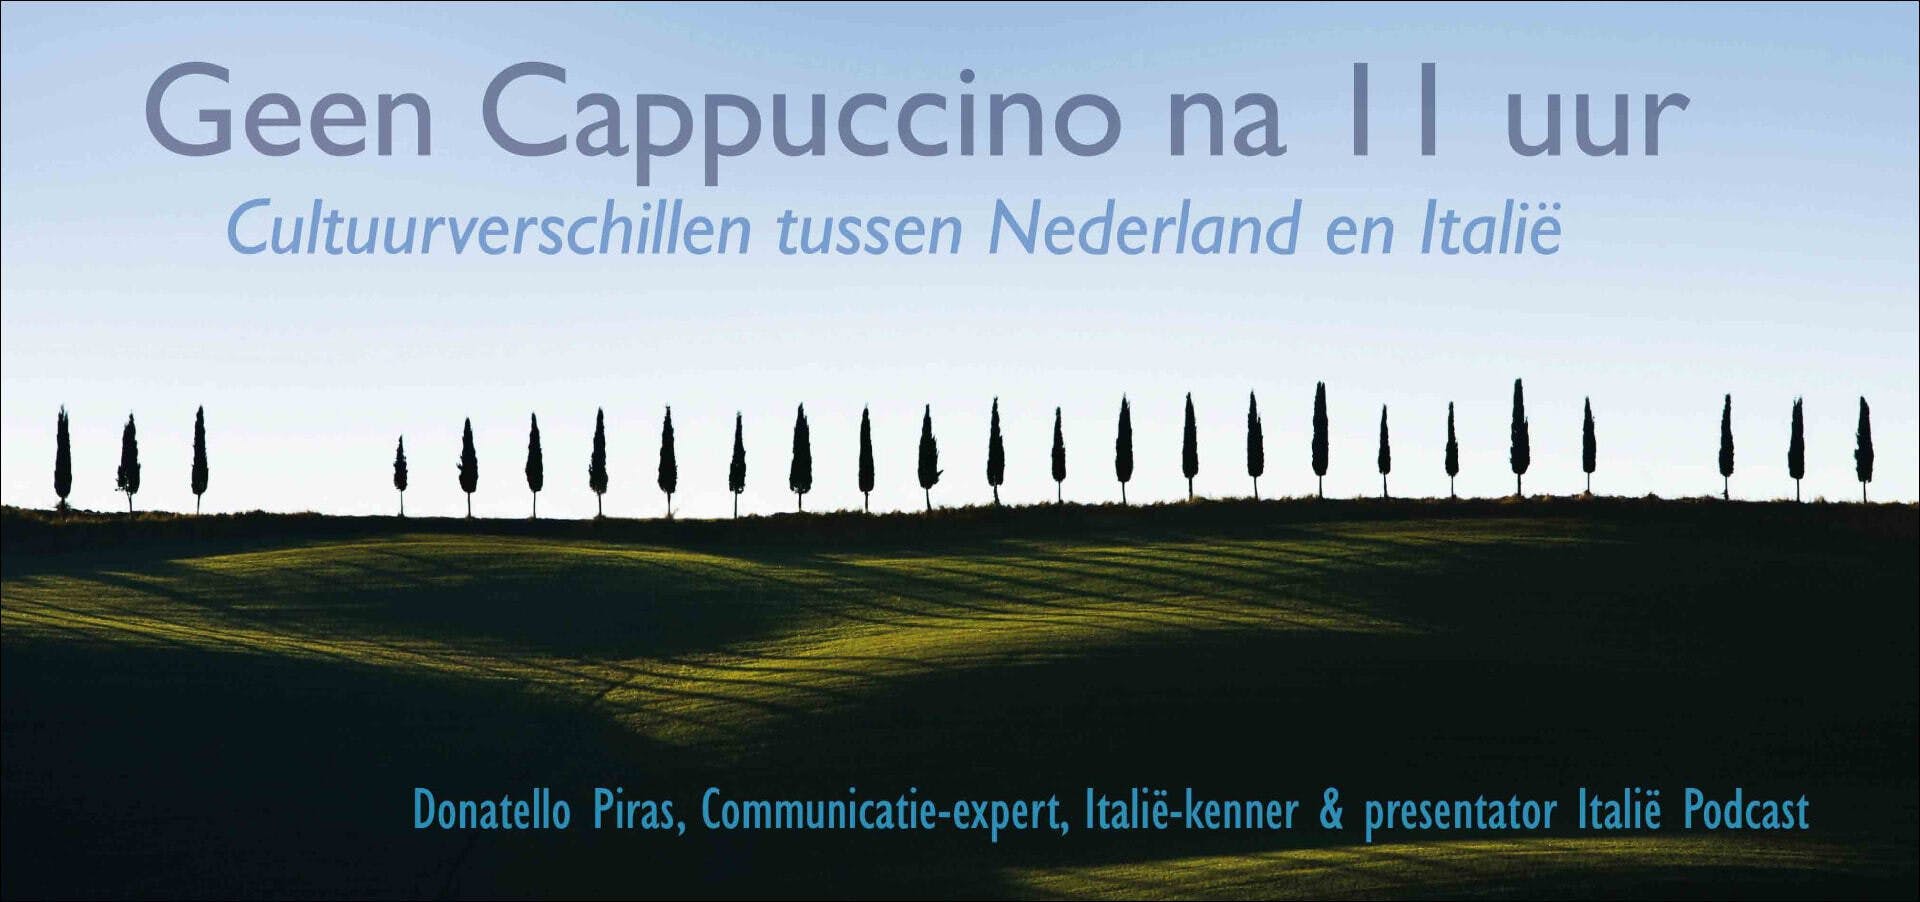 Landschap met bomen en blauwe lucht en tekst 'Geen Cappuccino na 11 uur'